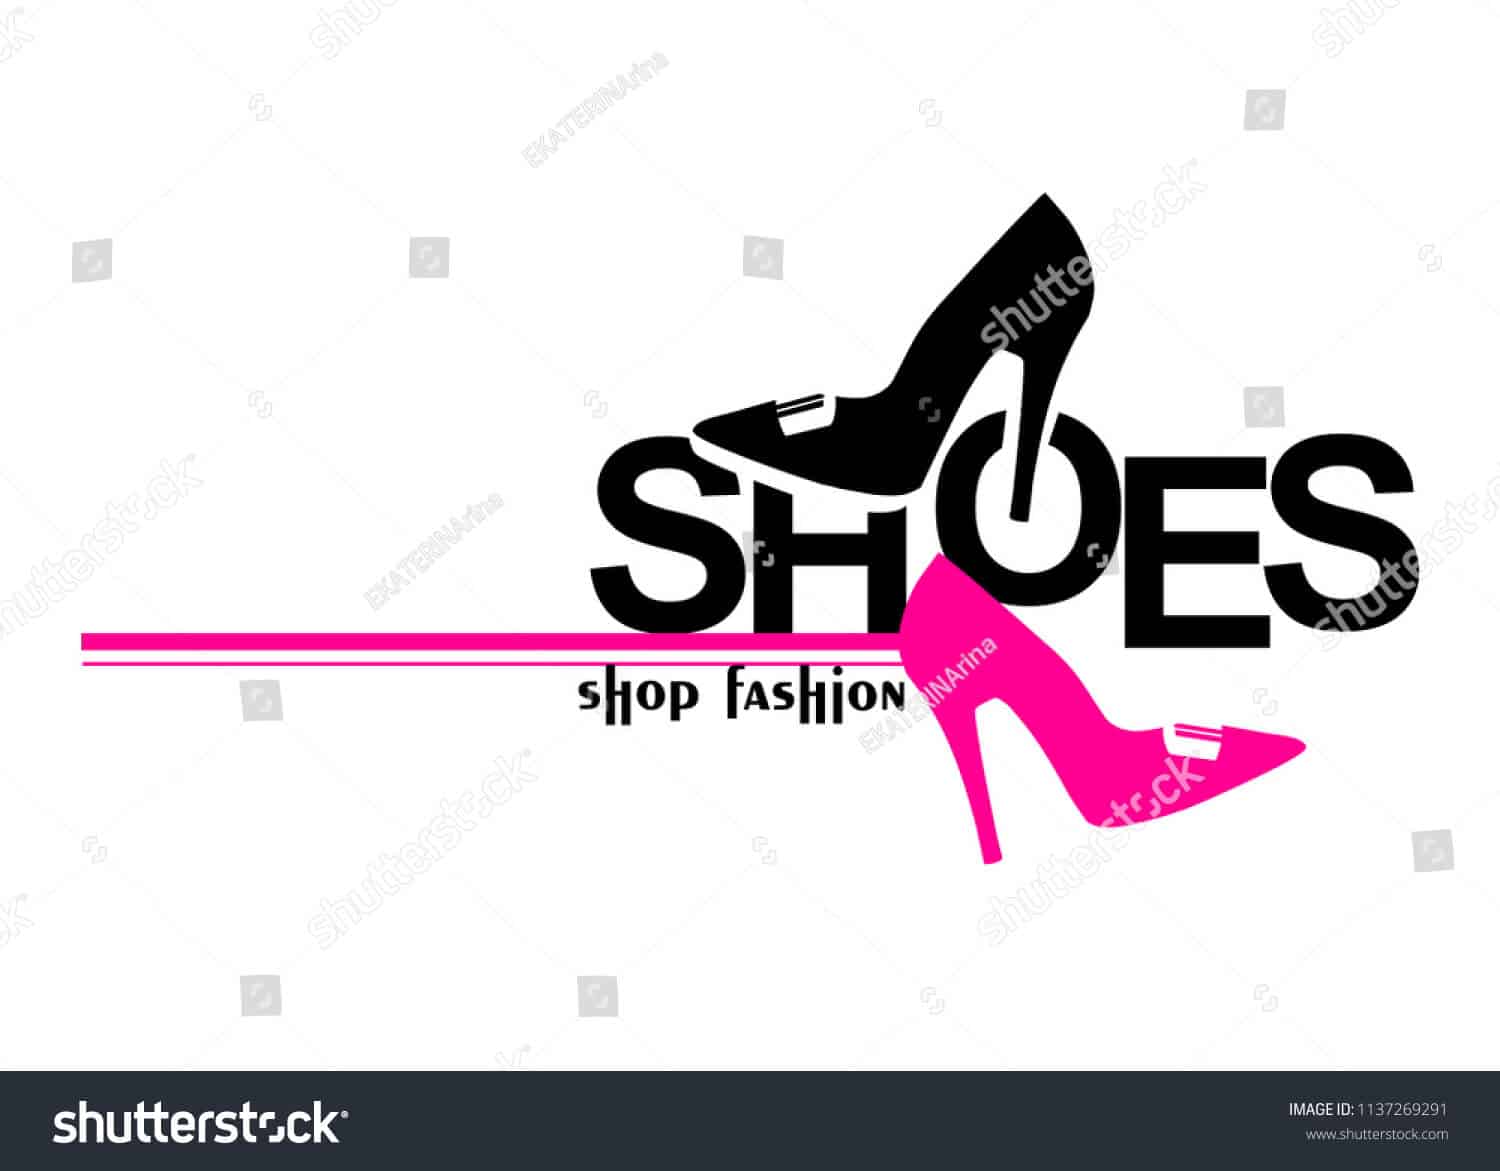 97 ngàn hình ảnh giày nữ chất lượng cao trên Shutterstock